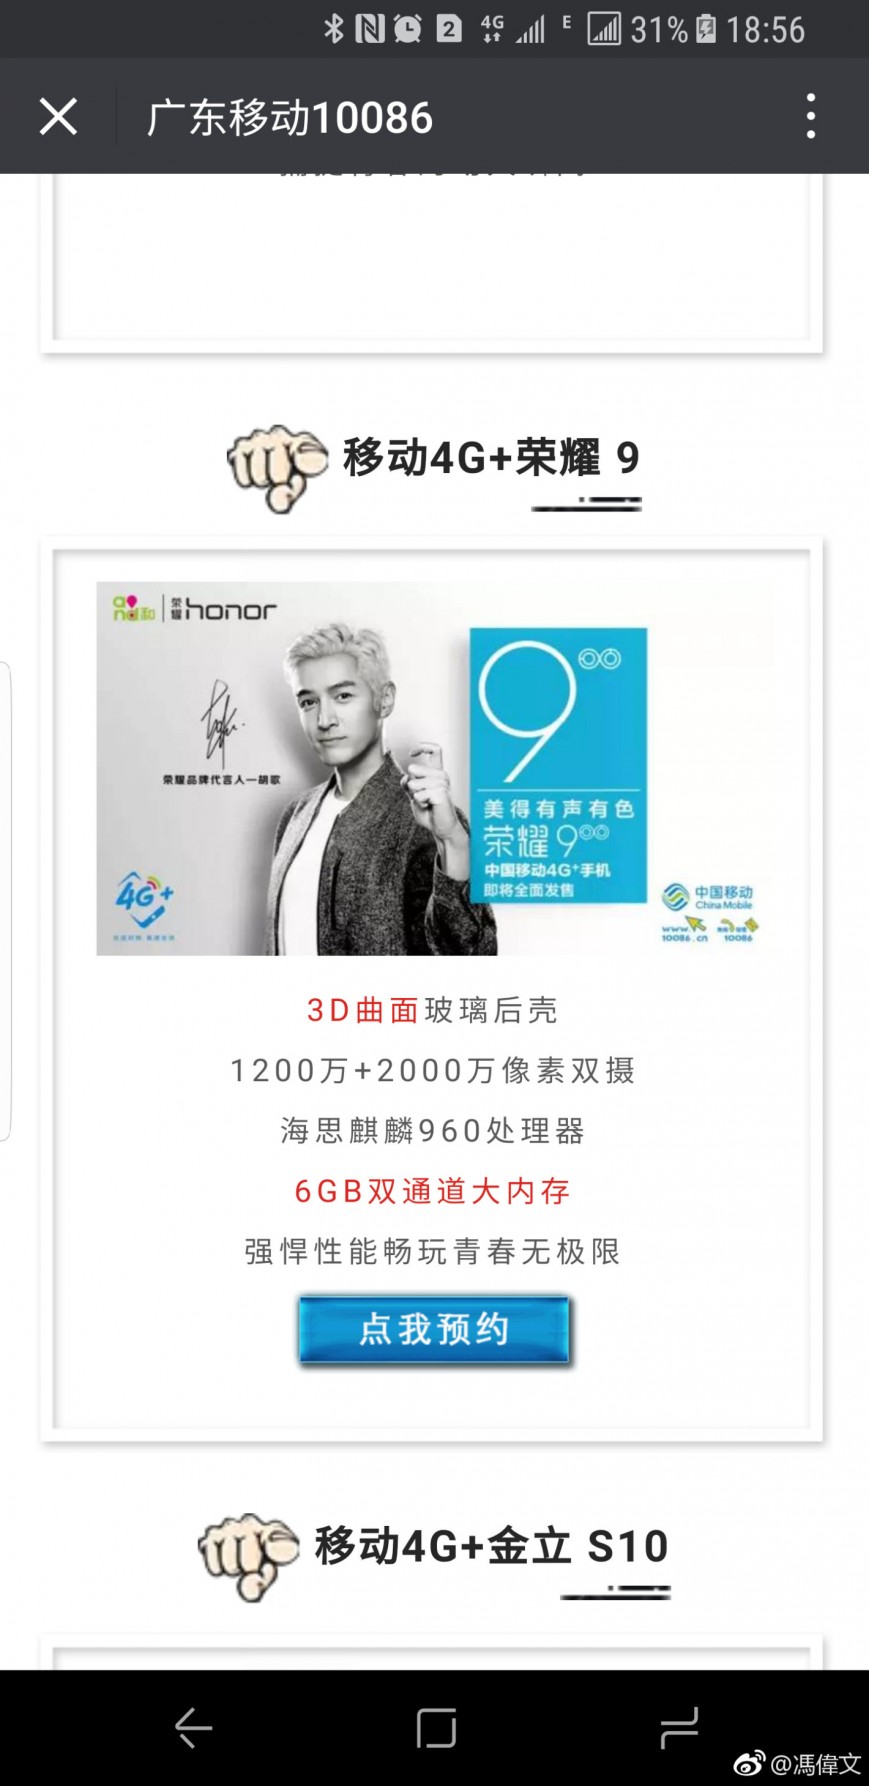 Параметры Huawei Honor 9 подтверждены промо-материалами